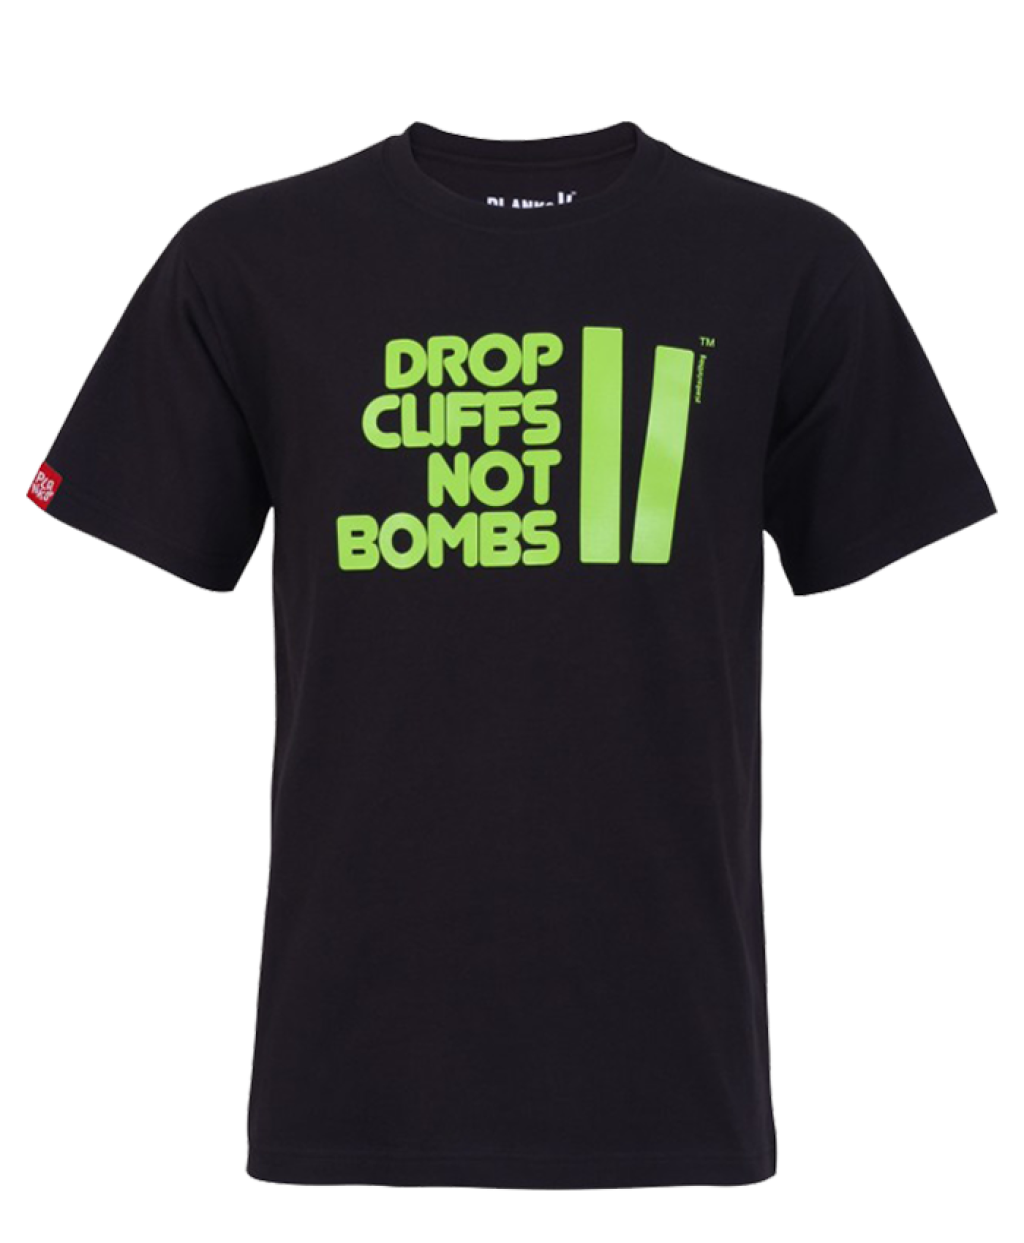 Drop Cliffs not Bombs T-Shirt in der Version von Planks Clothing